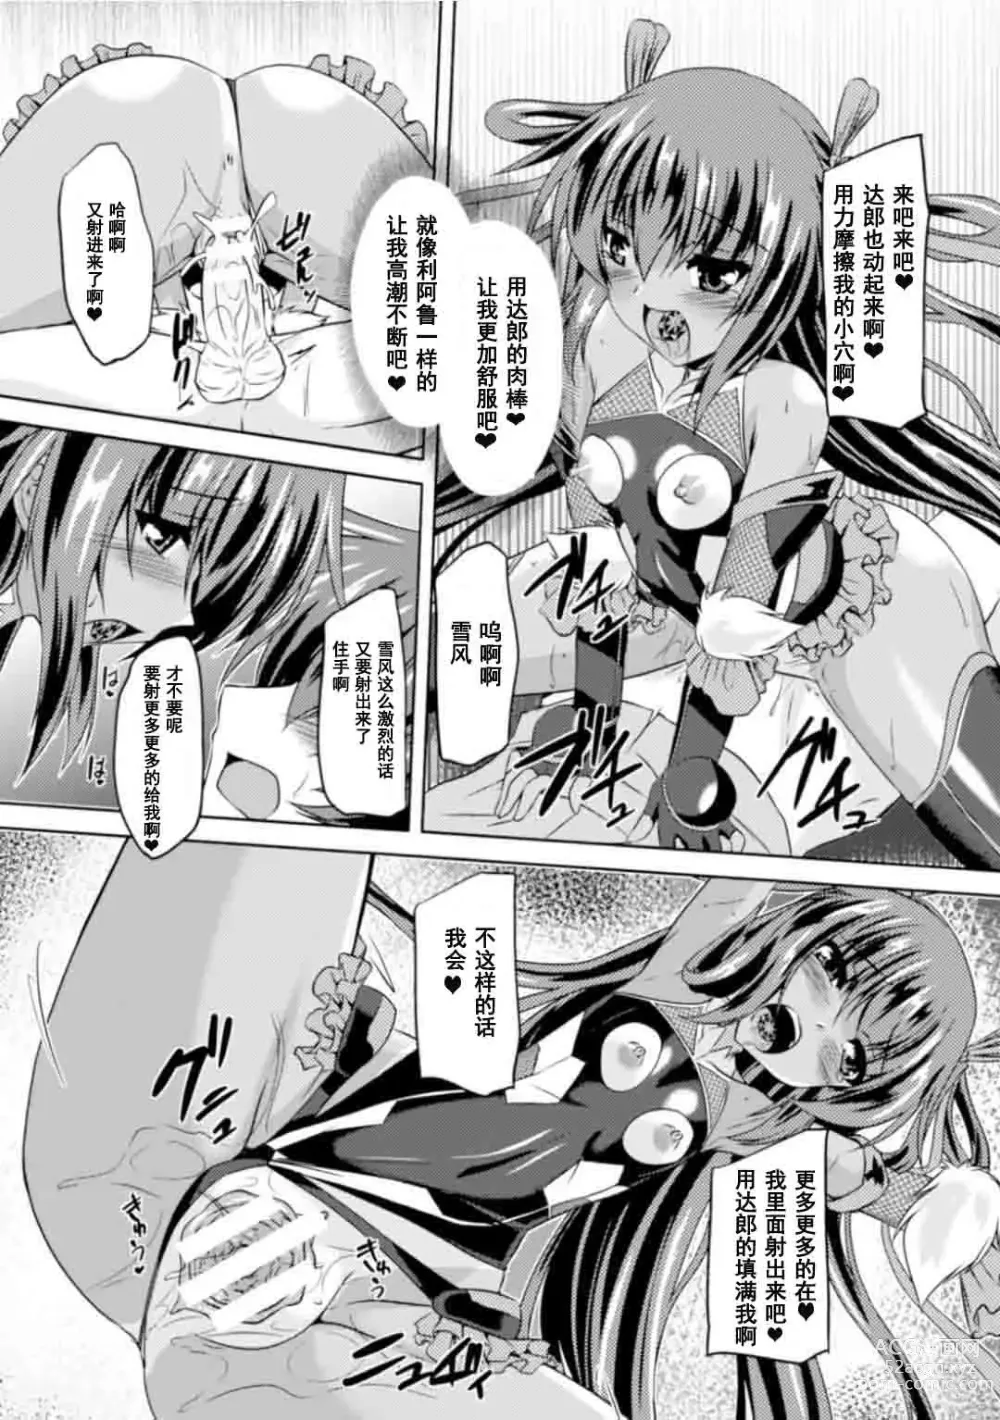 Page 159 of manga Taimanin Yukikaze ~Taimanin Wa Ingoku Ni Shizumu~